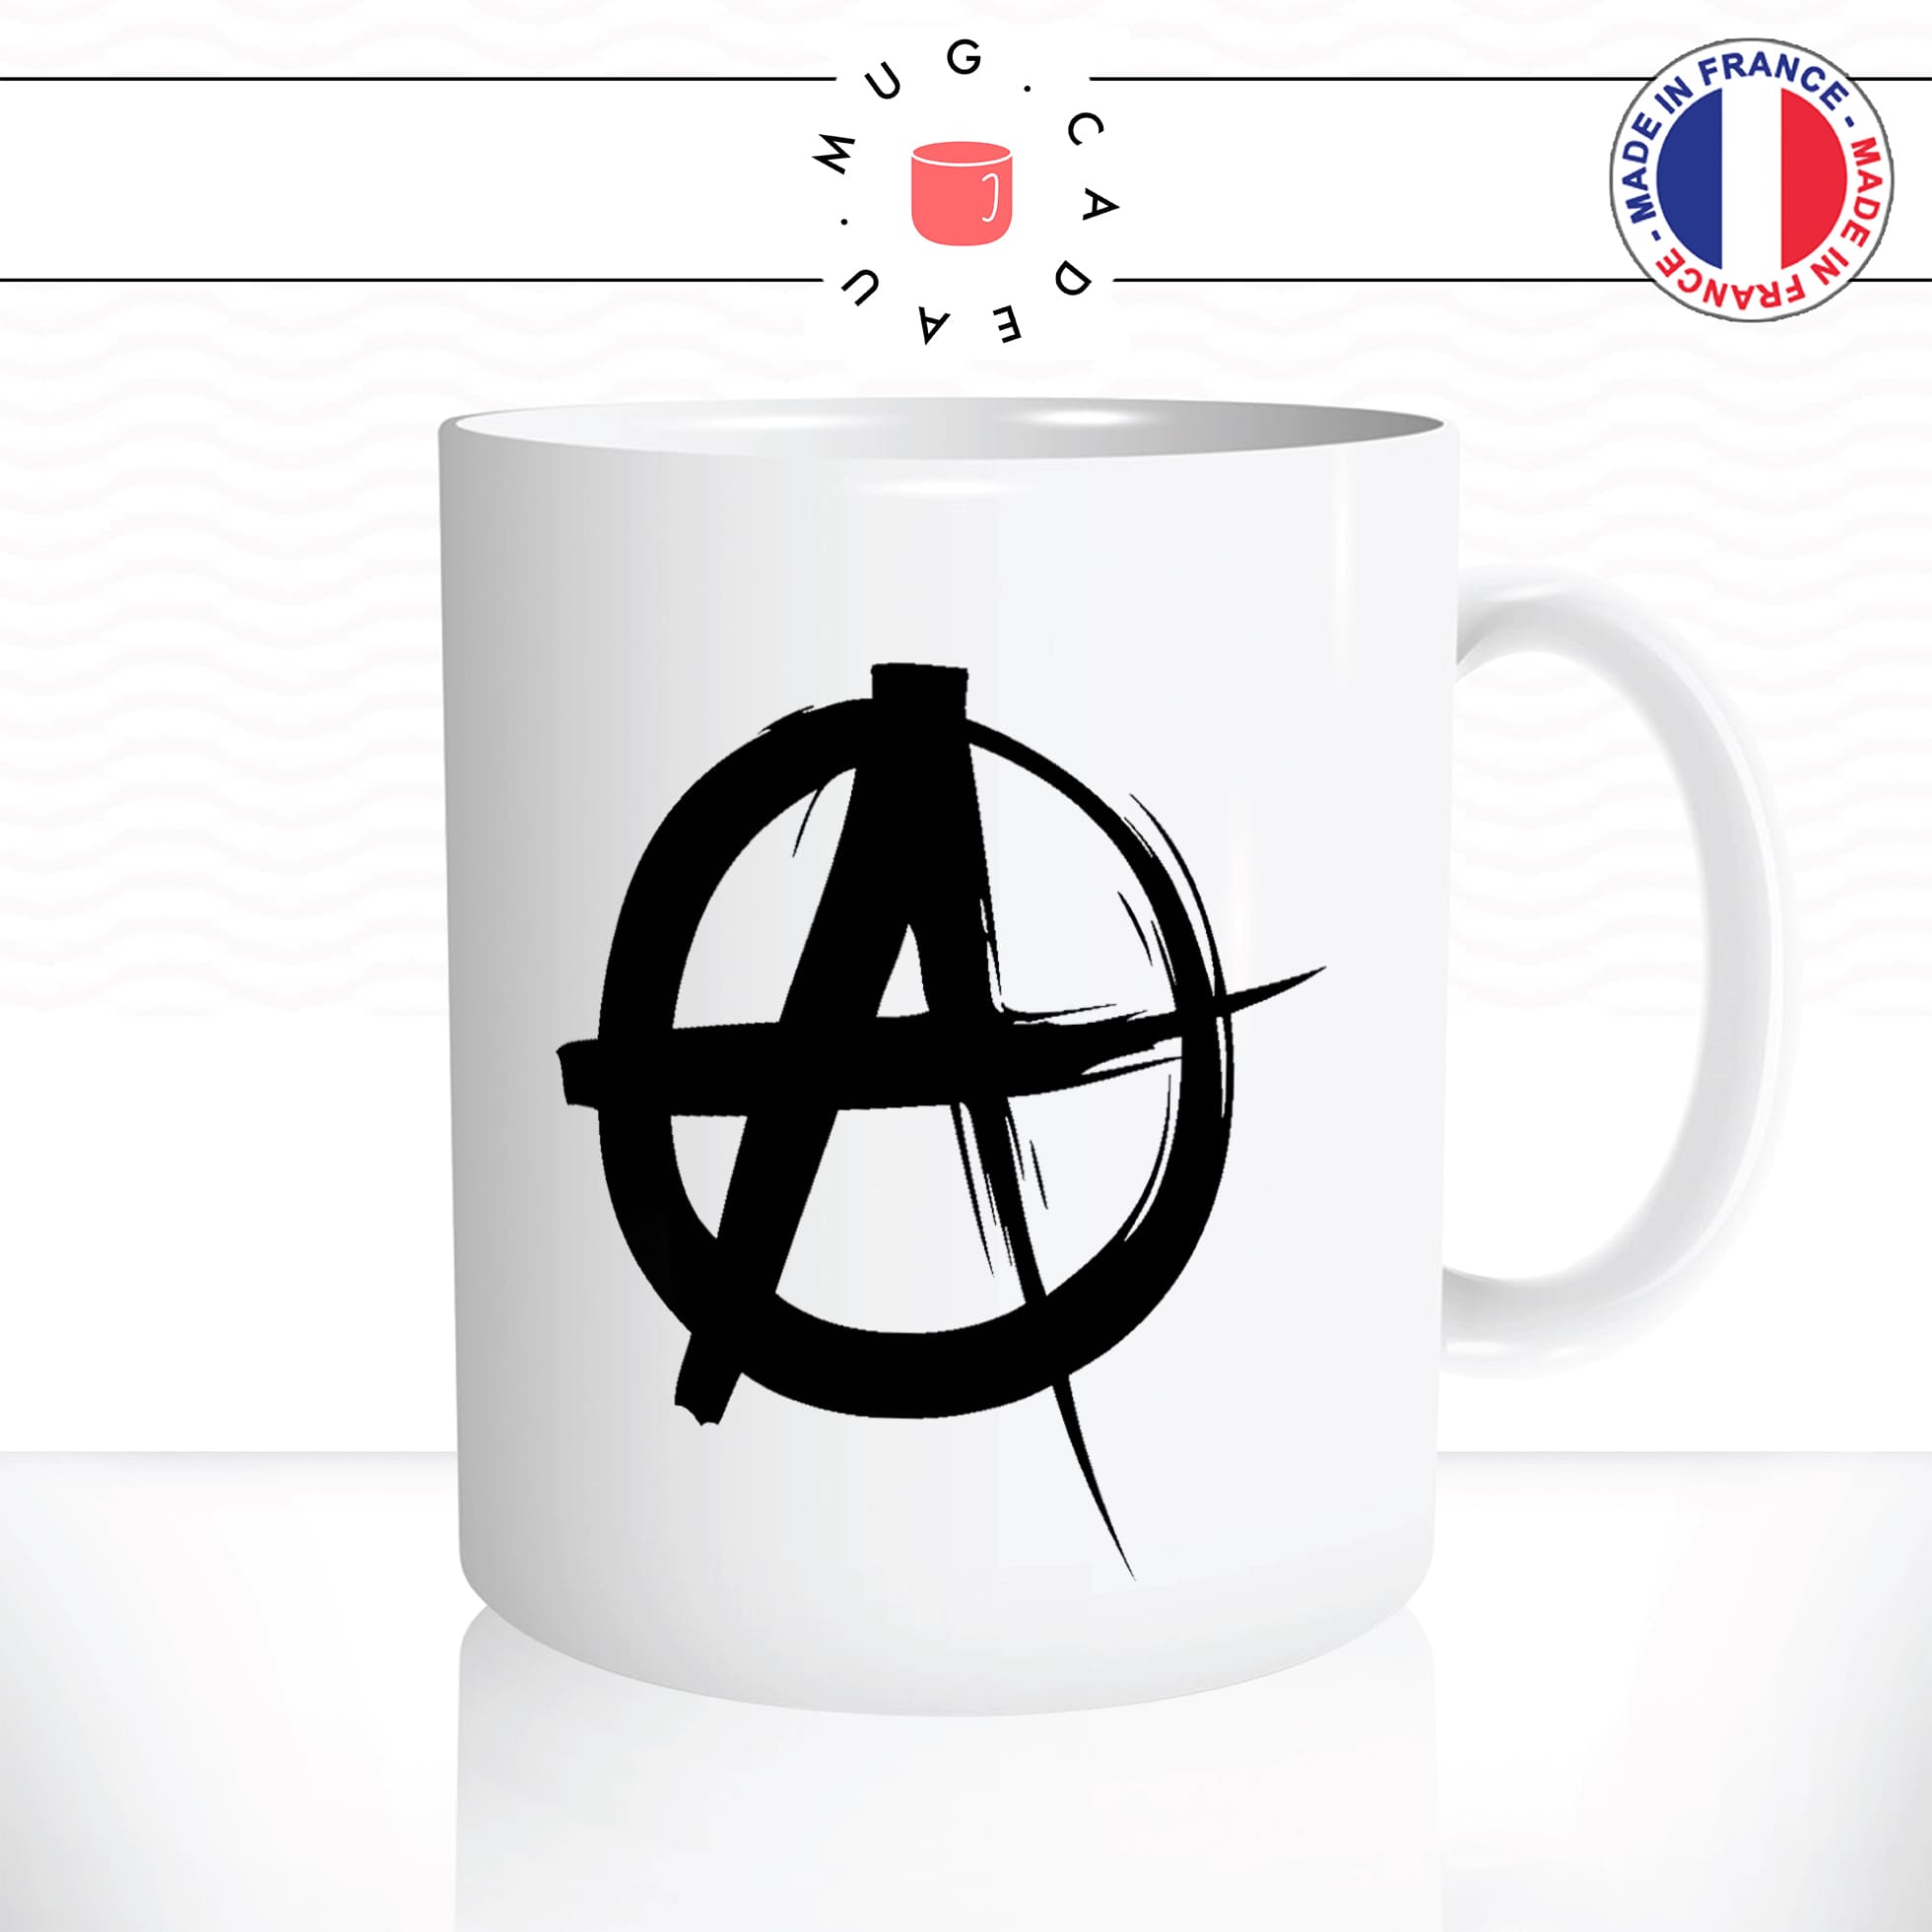 mug-blanc-tasse-idée-cadeau-personnalisé-anarchiste-anarchy-anarchie-politique-black-blocks-anti-fa-societé-fun-drole-offrir-original-2